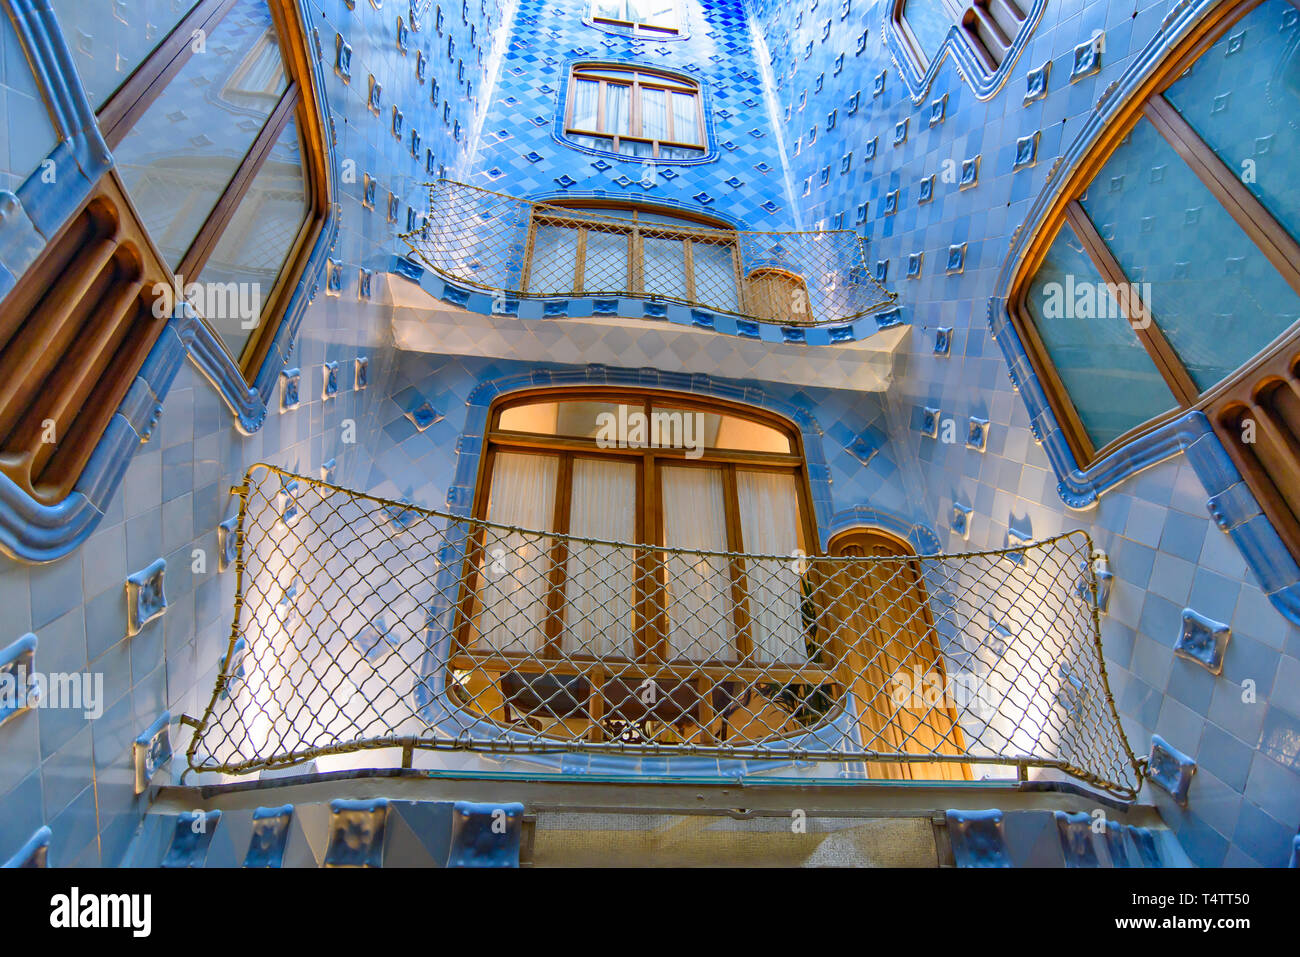 Intérieur de la Casa Batlló, un bâtiment conçu par Gaudi, à Barcelone, Espagne Banque D'Images